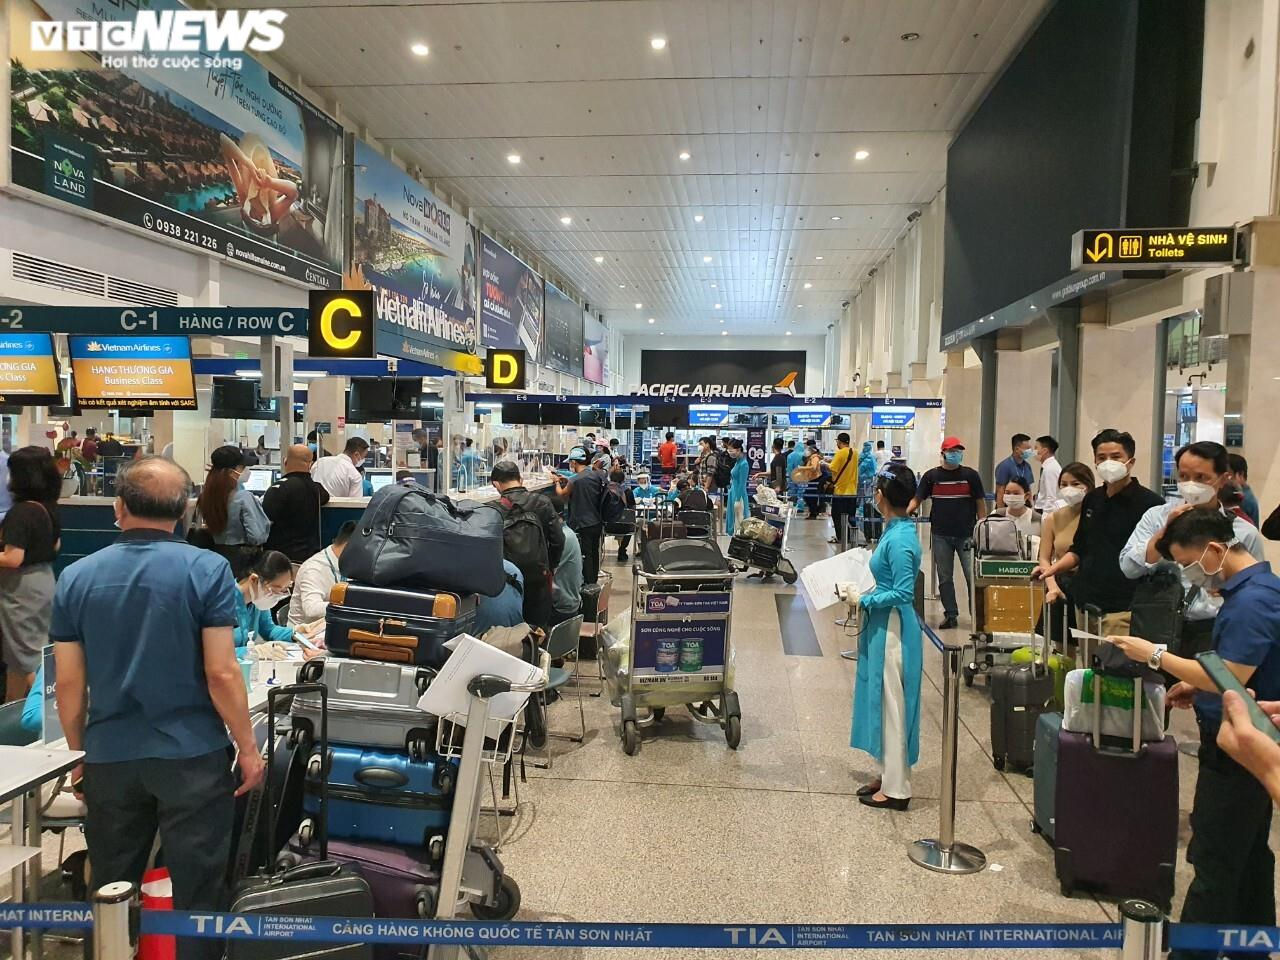 Sân bay Tân Sơn Nhất nhộn nhịp trở lại, 'check-in' nhanh chóng - 1